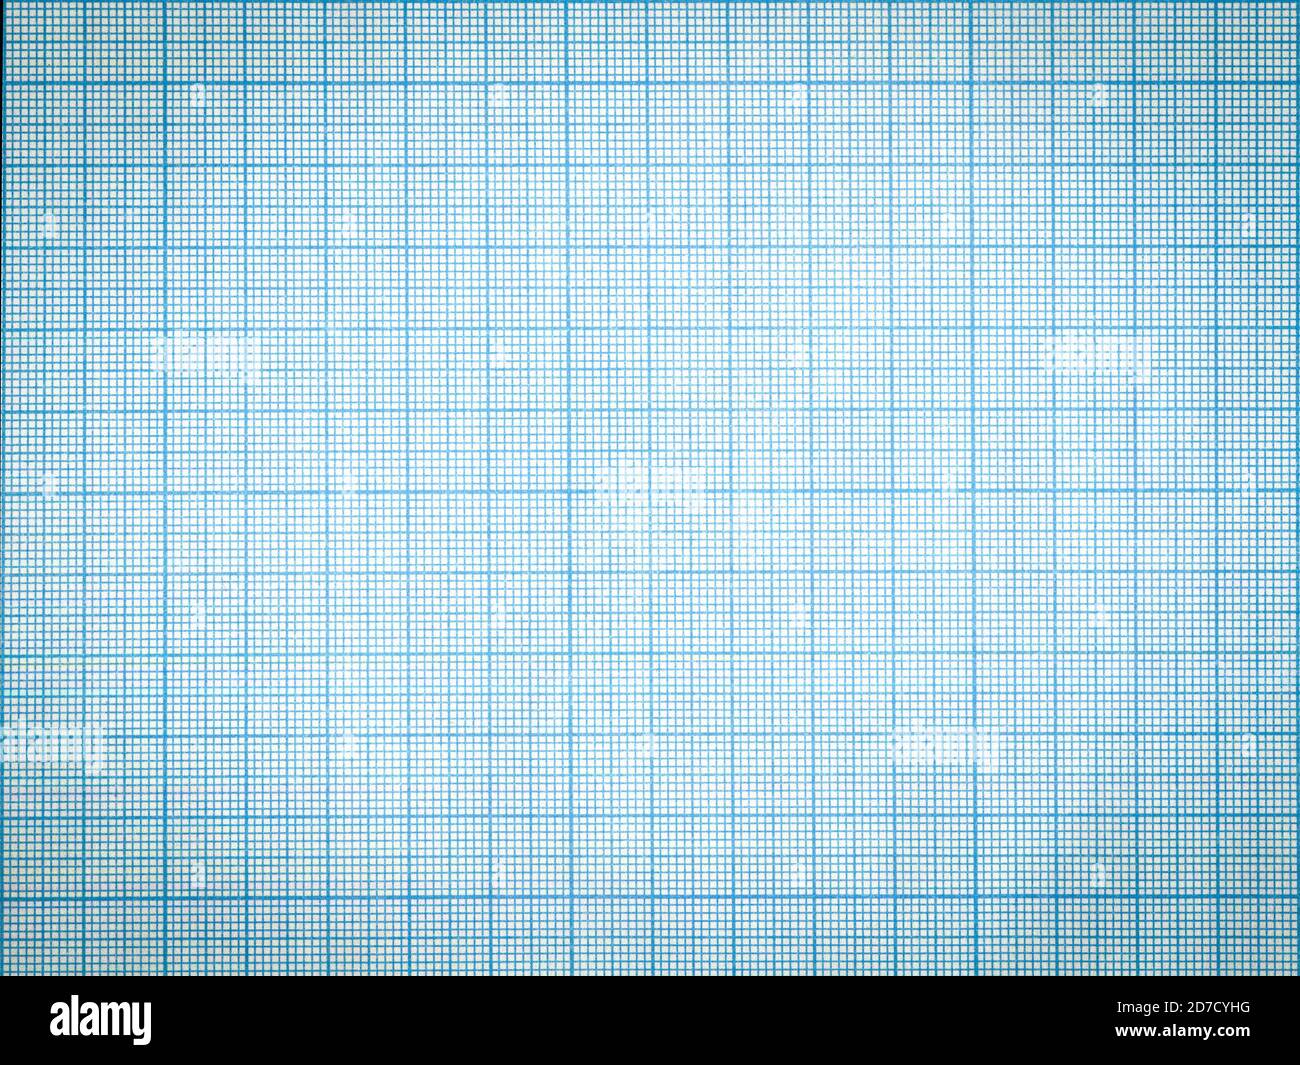 Arrière-plan de la feuille de papier à échelle de grille bleue Banque D'Images